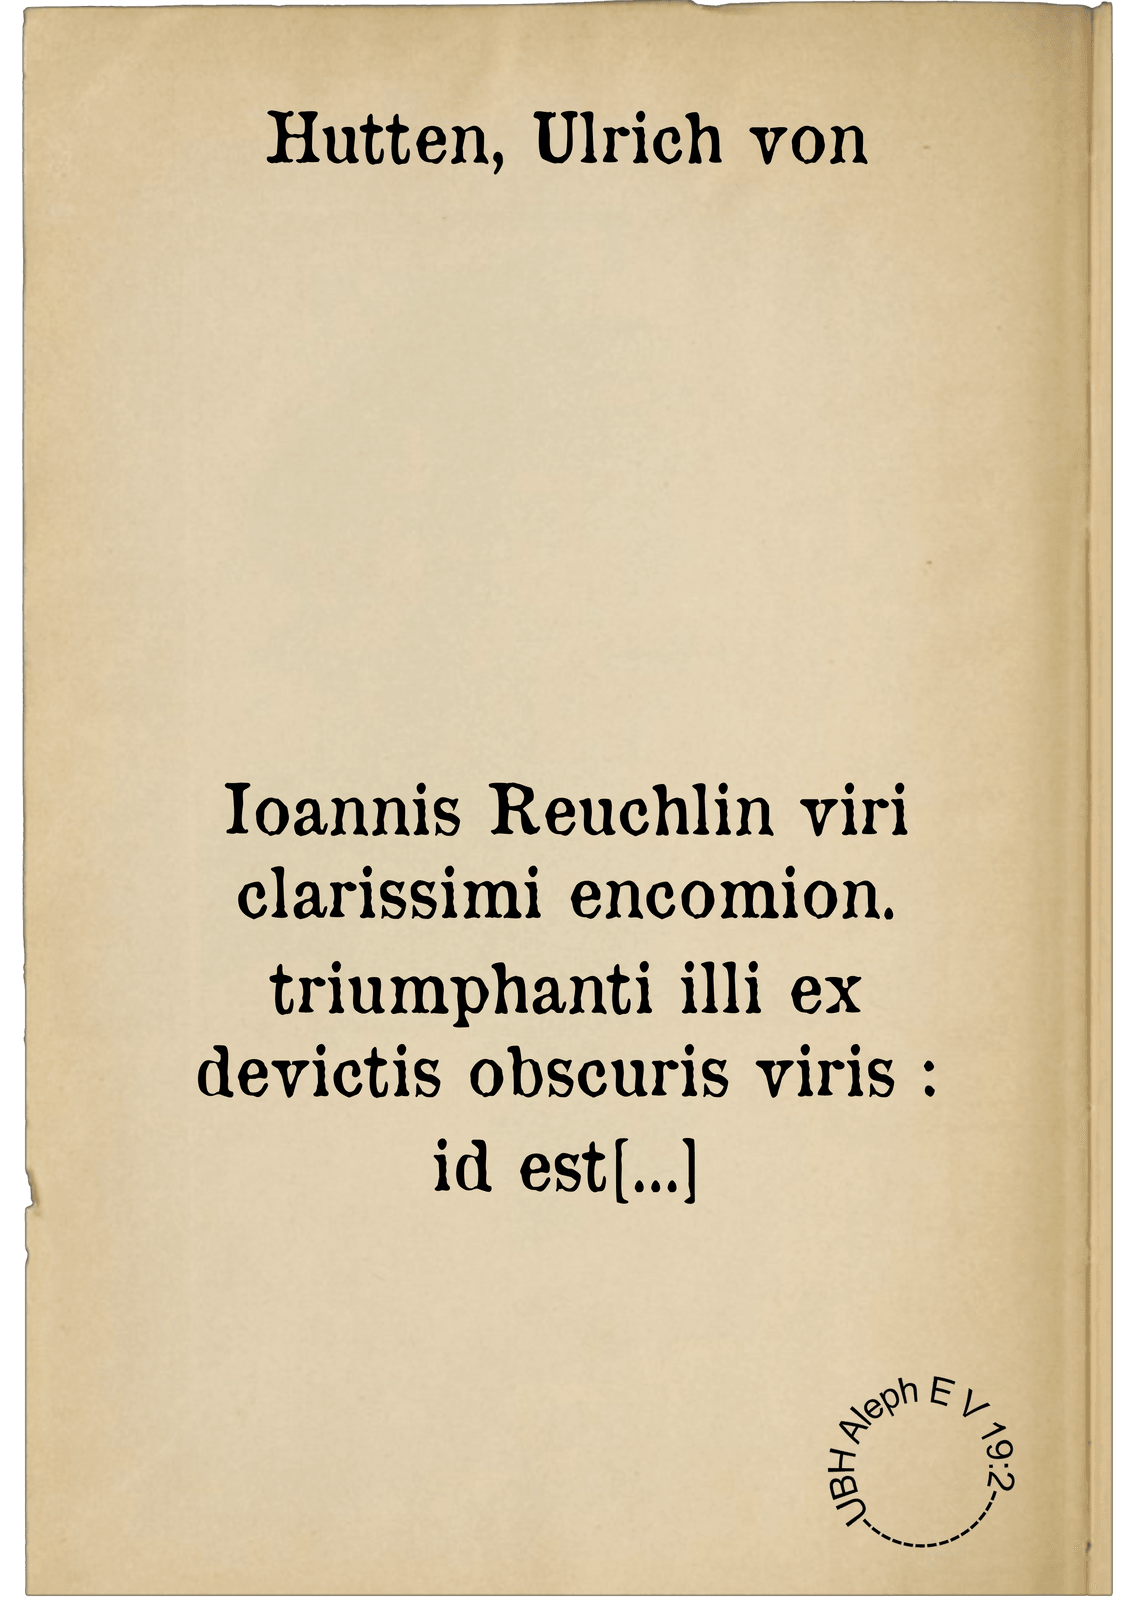 Ioannis Reuchlin viri clarissimi encomion. triumphanti illi ex devictis obscuris viris : id est theologistis Coloniensis et fratribus de ordine Predicatorum